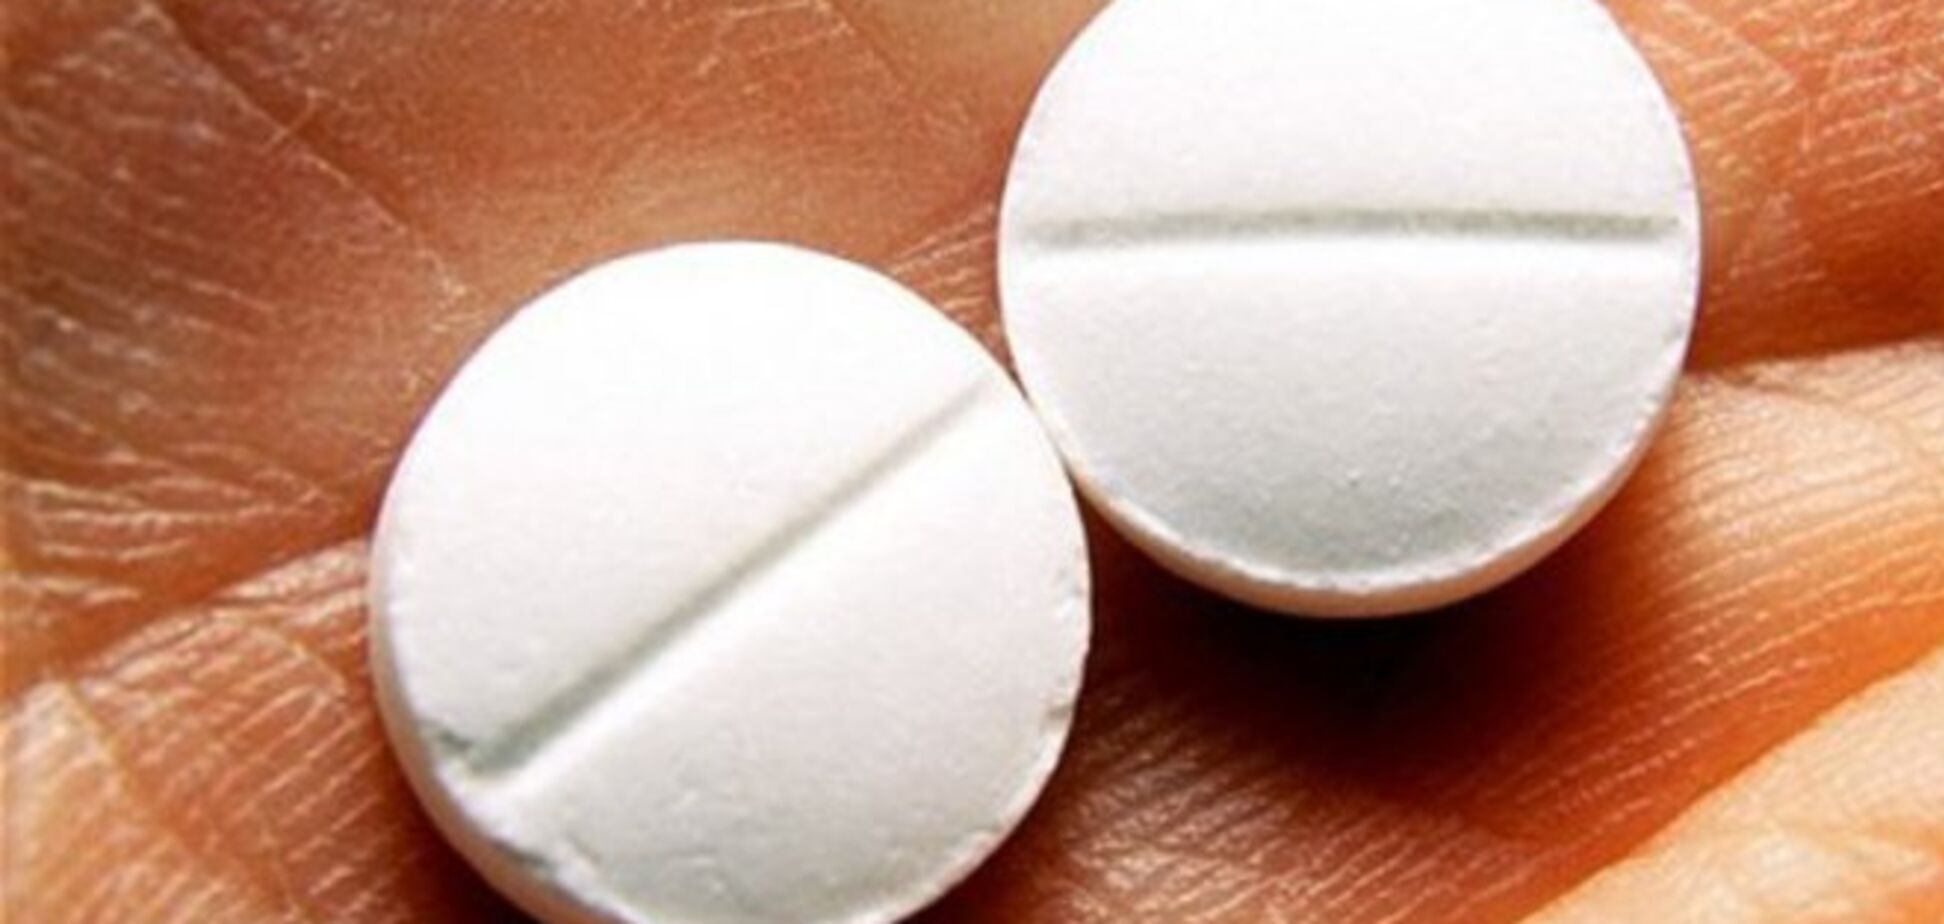 При угрозе тромбов безопасней принимать аспирин